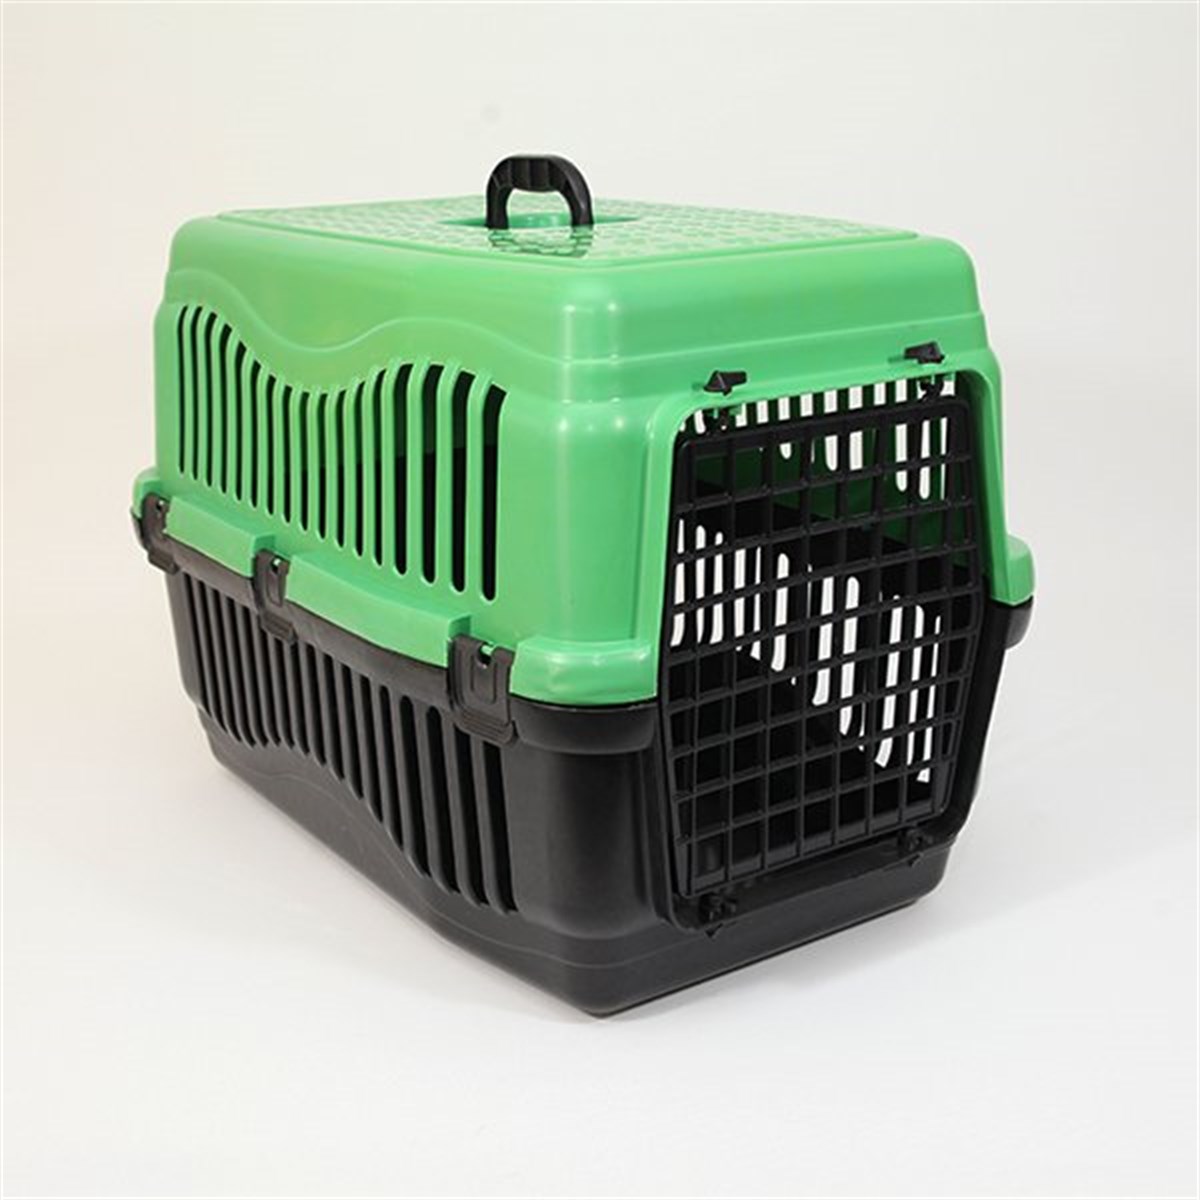 Pet Style Büyük Kedi Köpek Kafesi Yeşil 63X43X45h, Alışverişin Adresi'nde |  Shopiglo